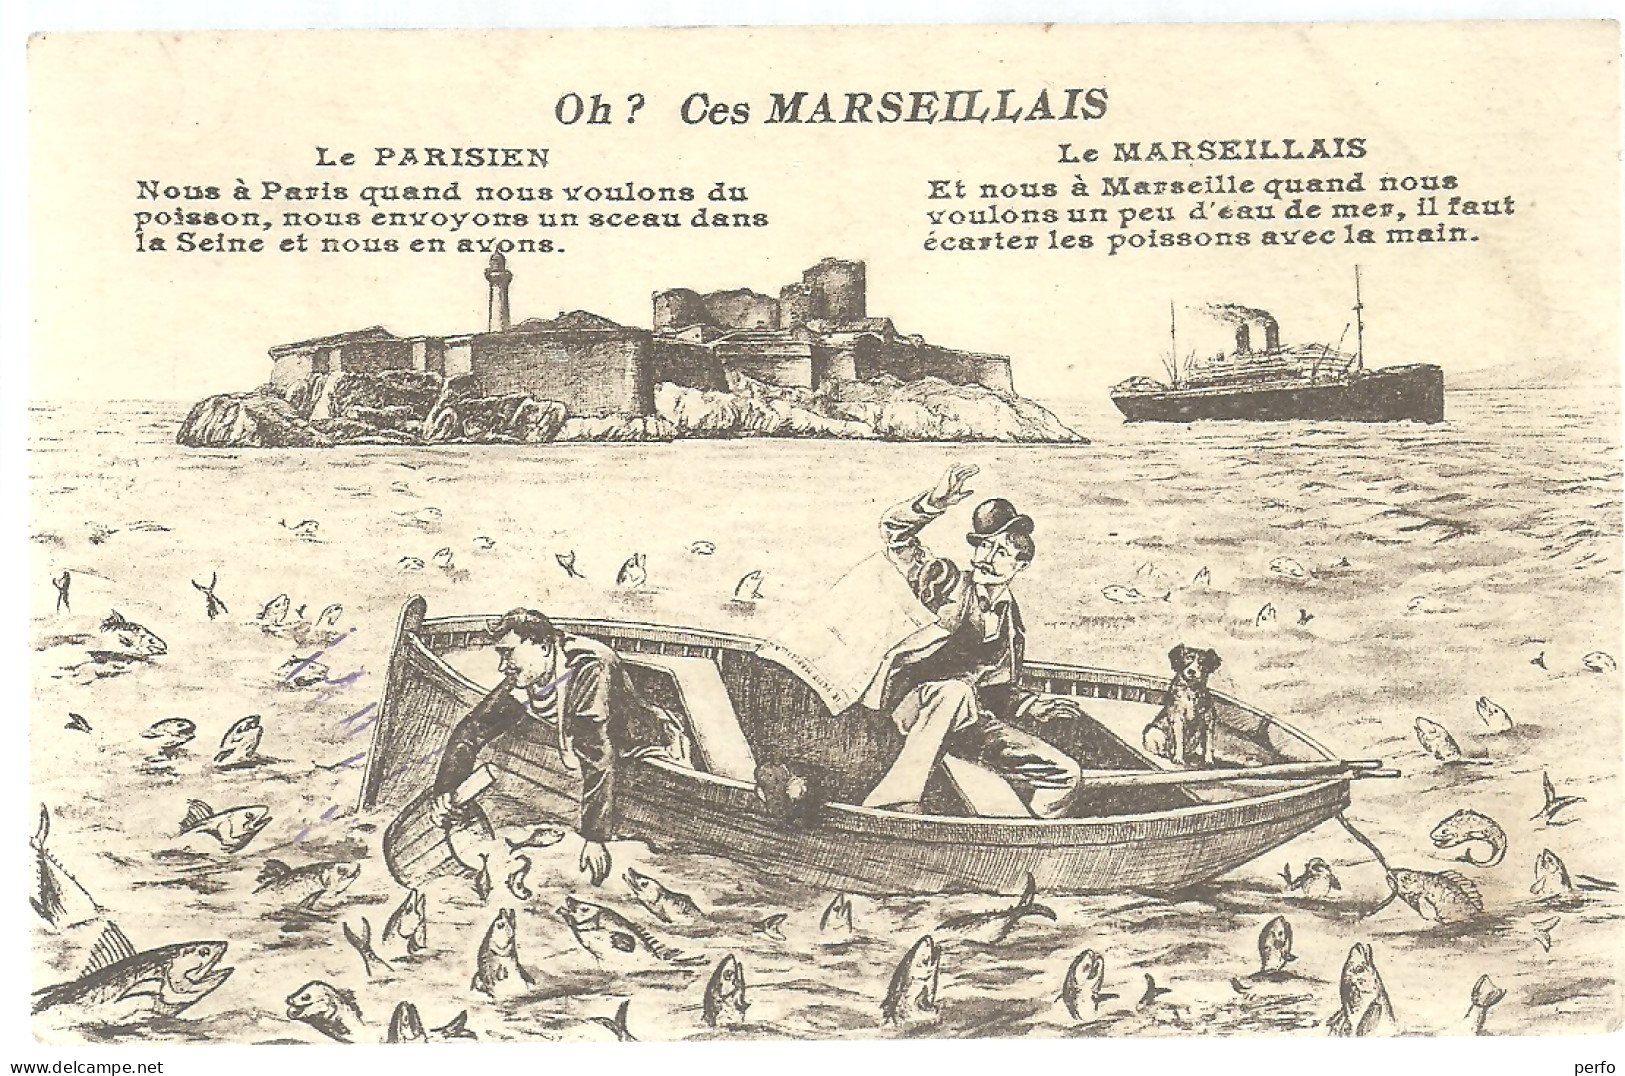 LOT du 13- BOUCHES du RHONE-  12 cartes de Marseille,   livrées sous blister